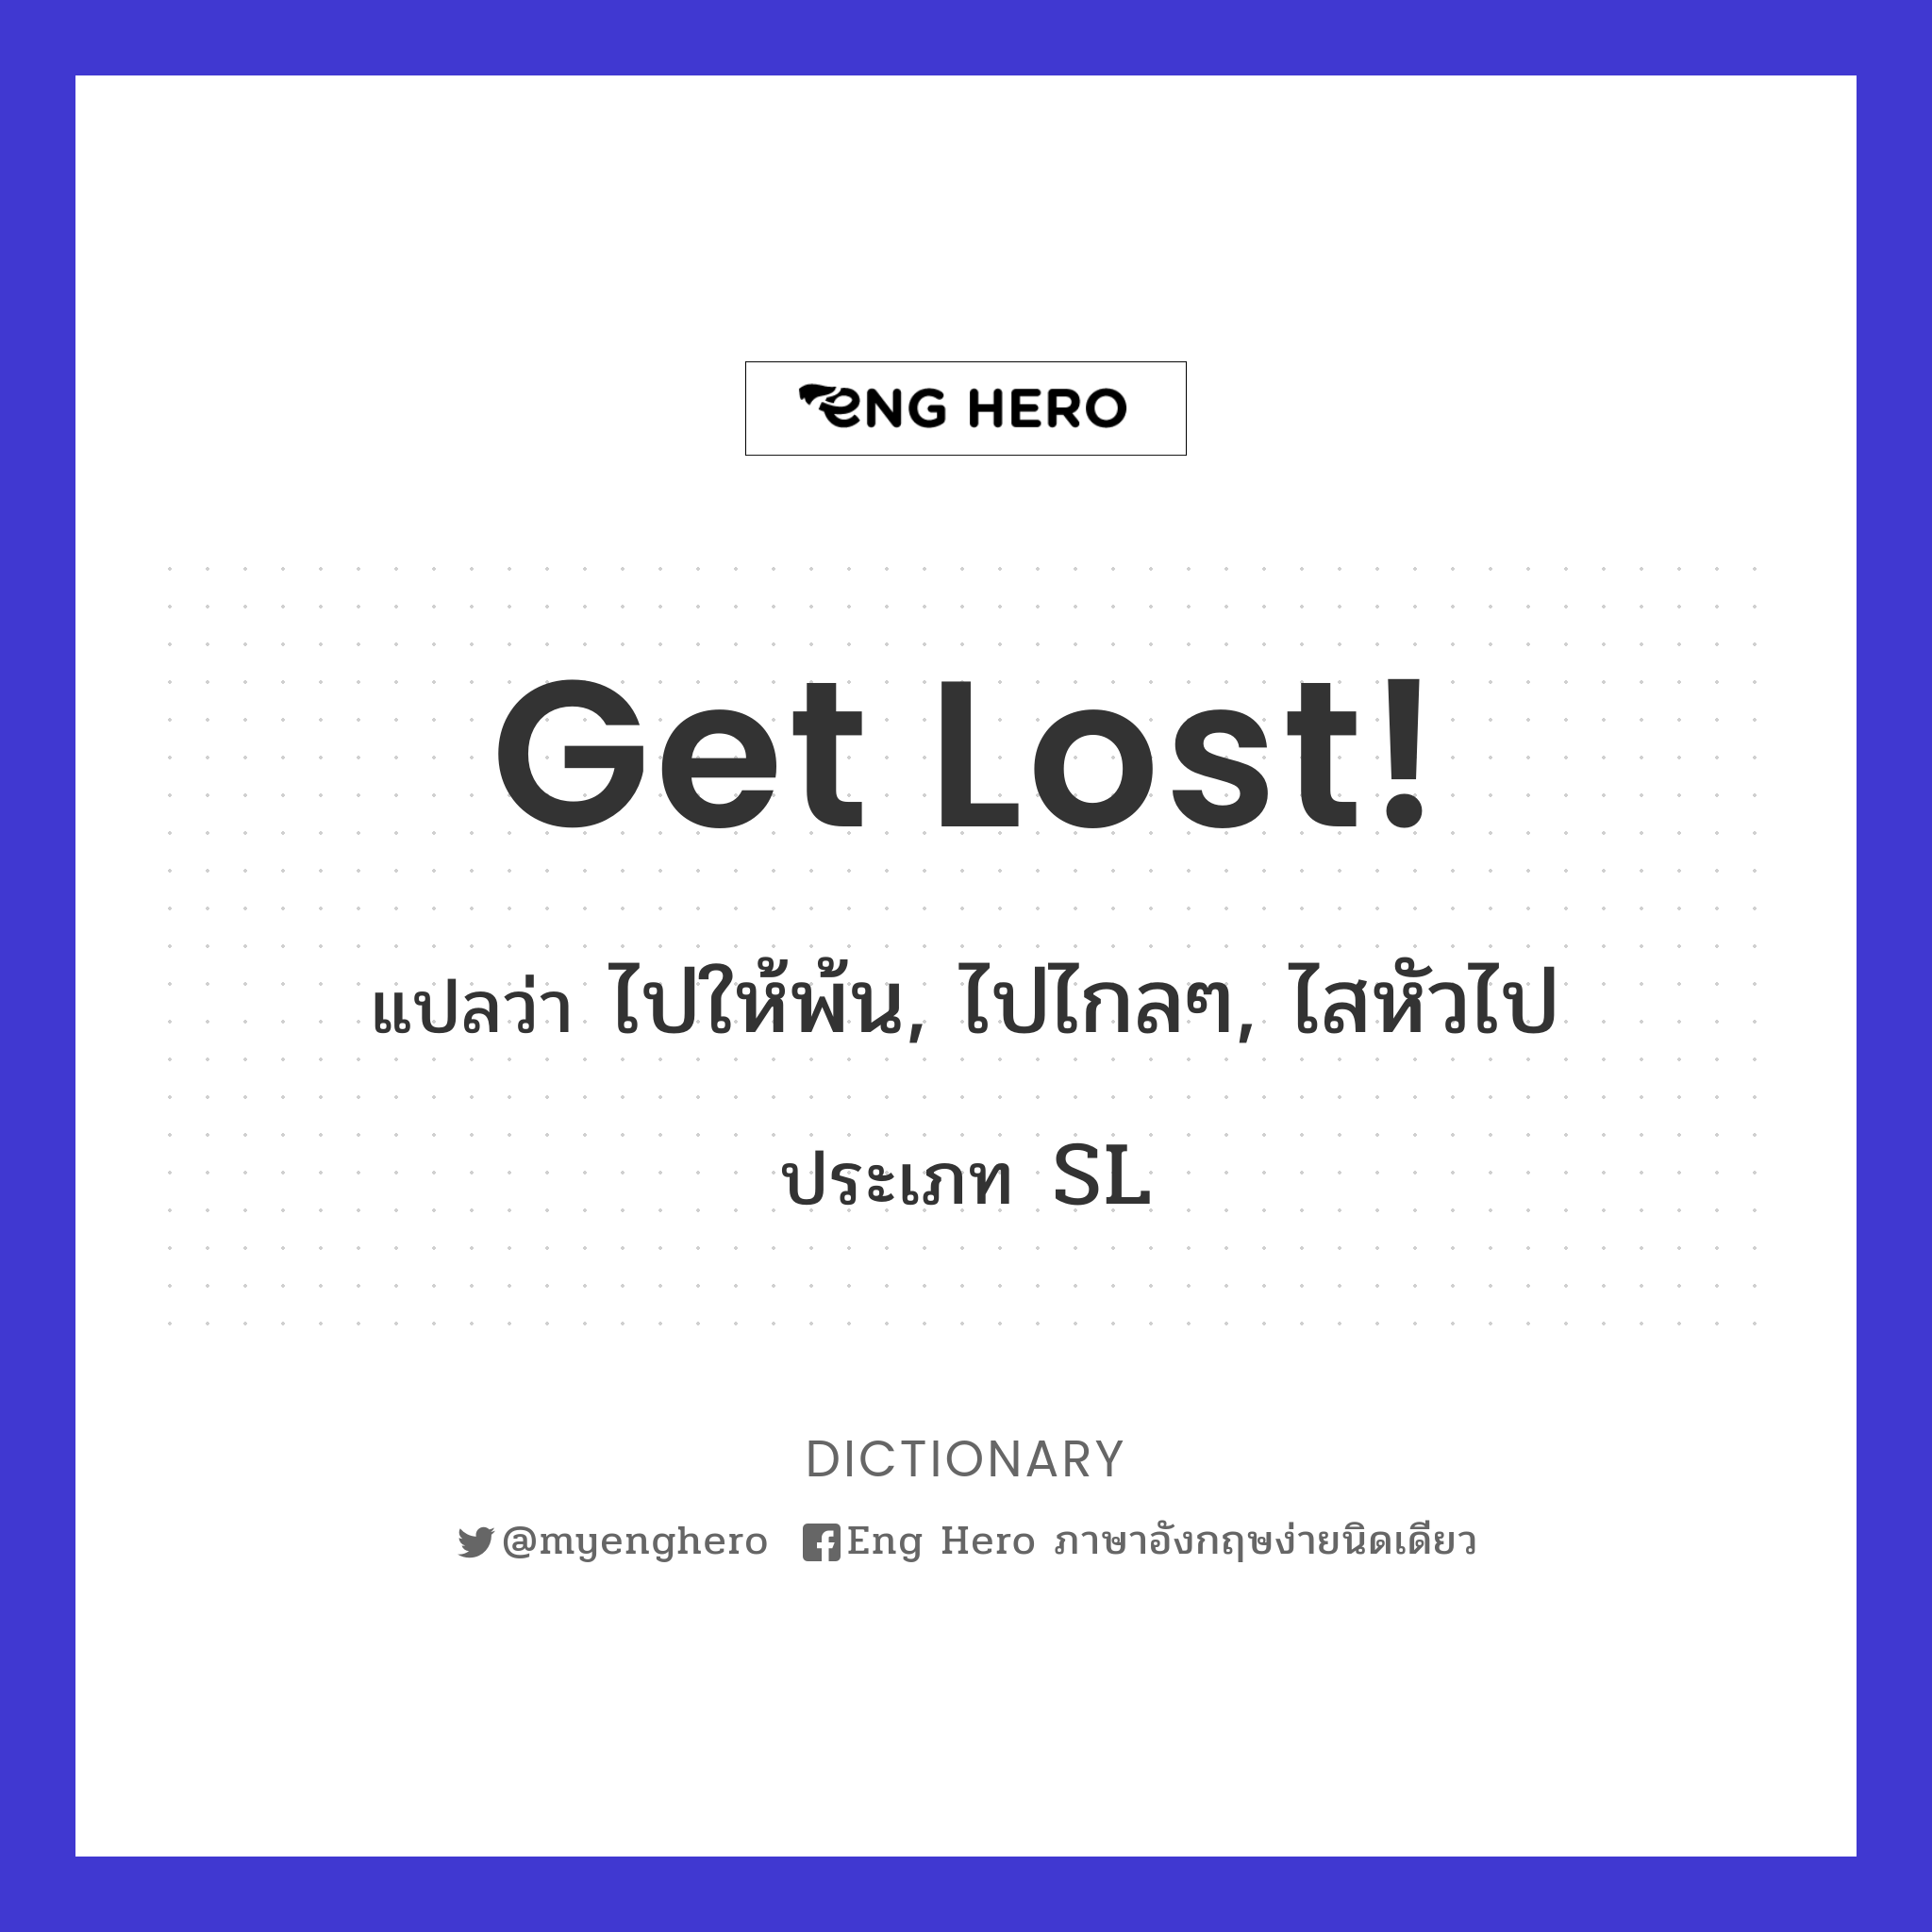 Get lost!